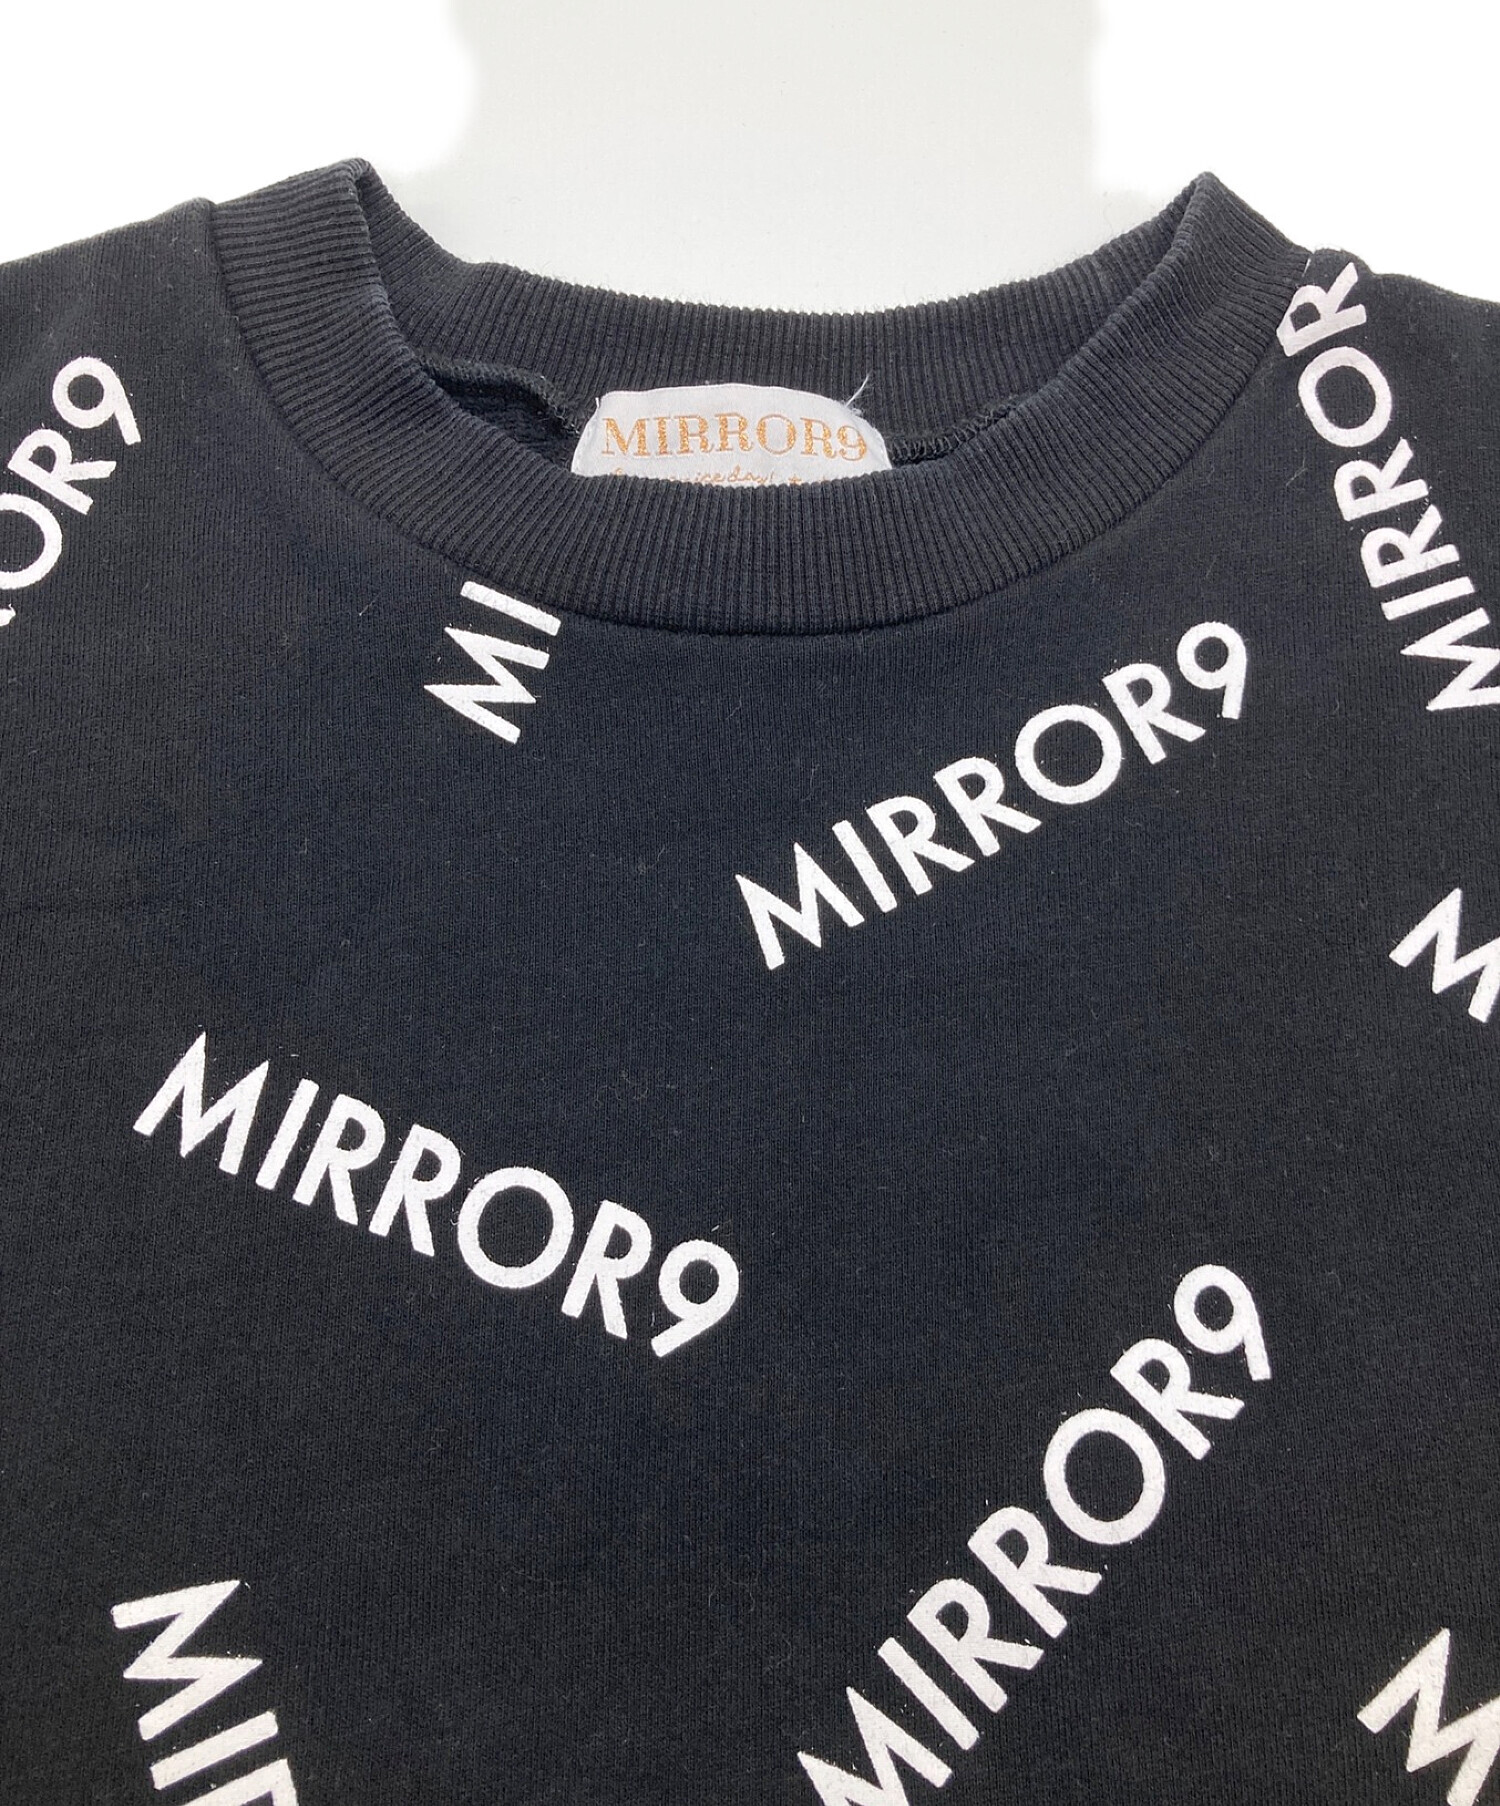 mirror9 (ミラーナイン) ロゴプリントスウェット ブラック サイズ:L